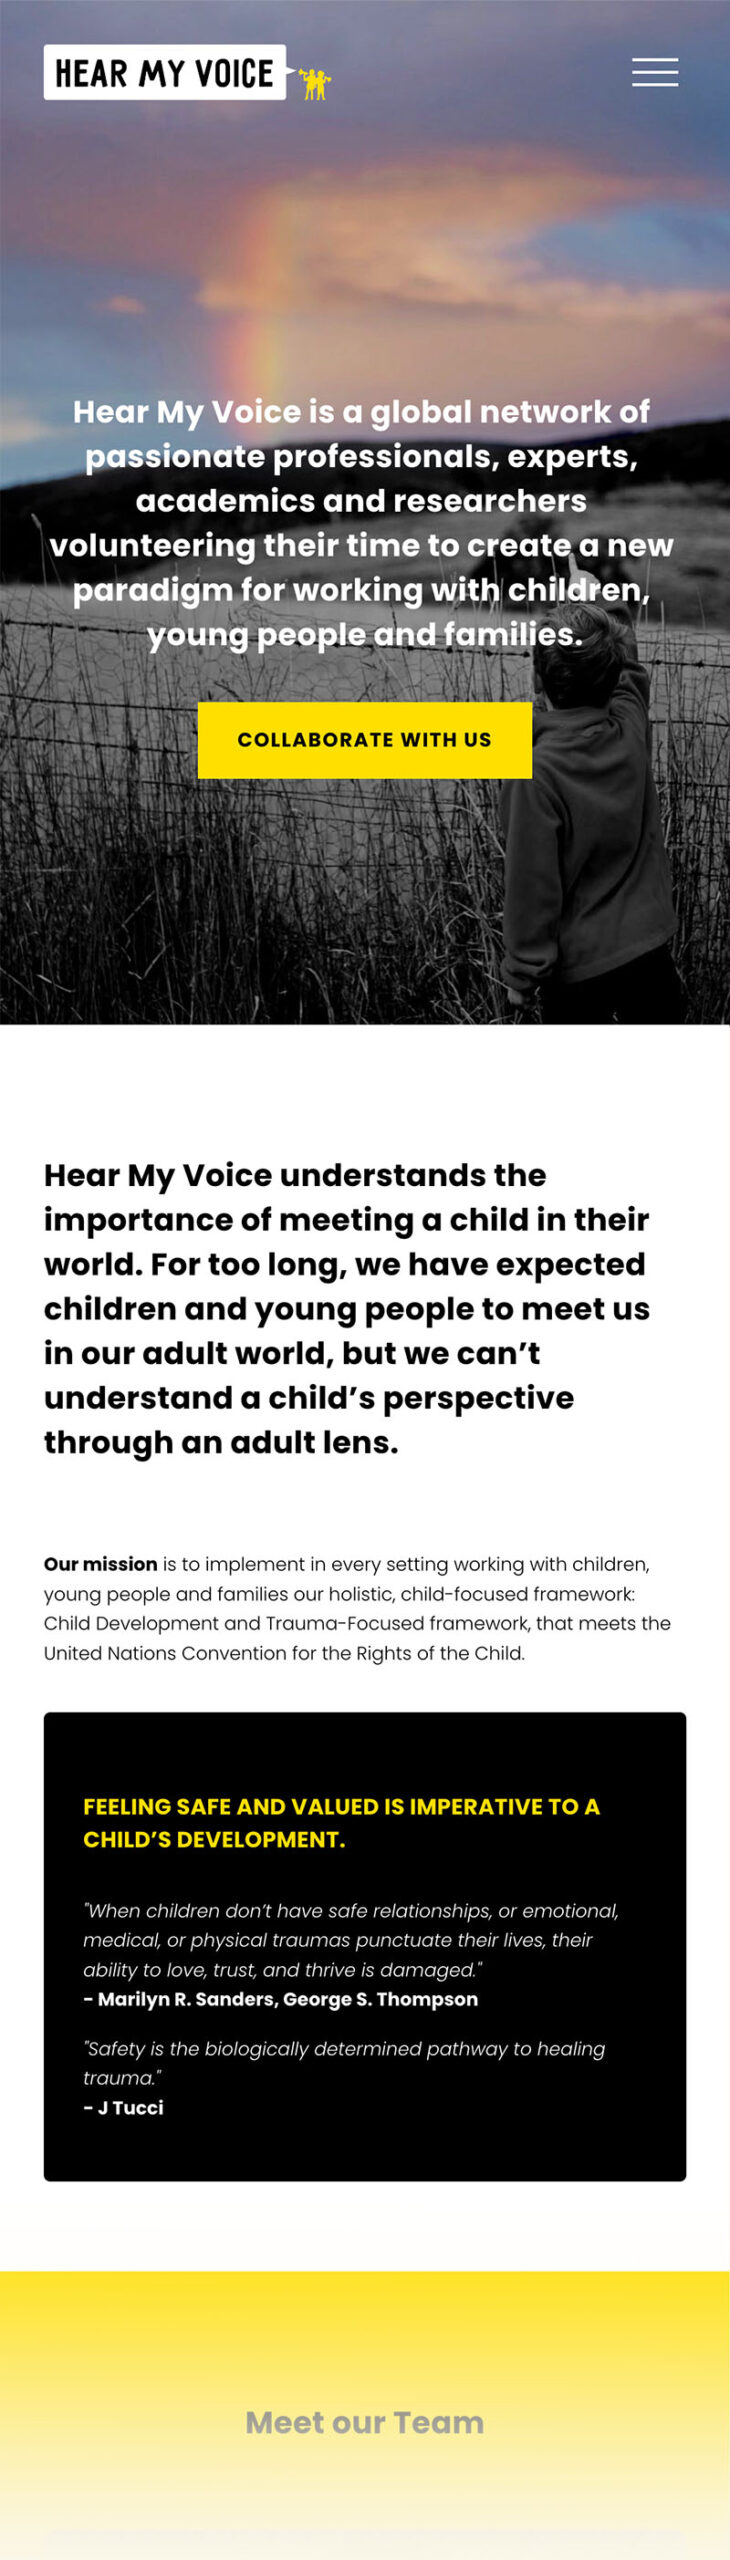 Hear my Voice Web Design by Emma Hackett Design